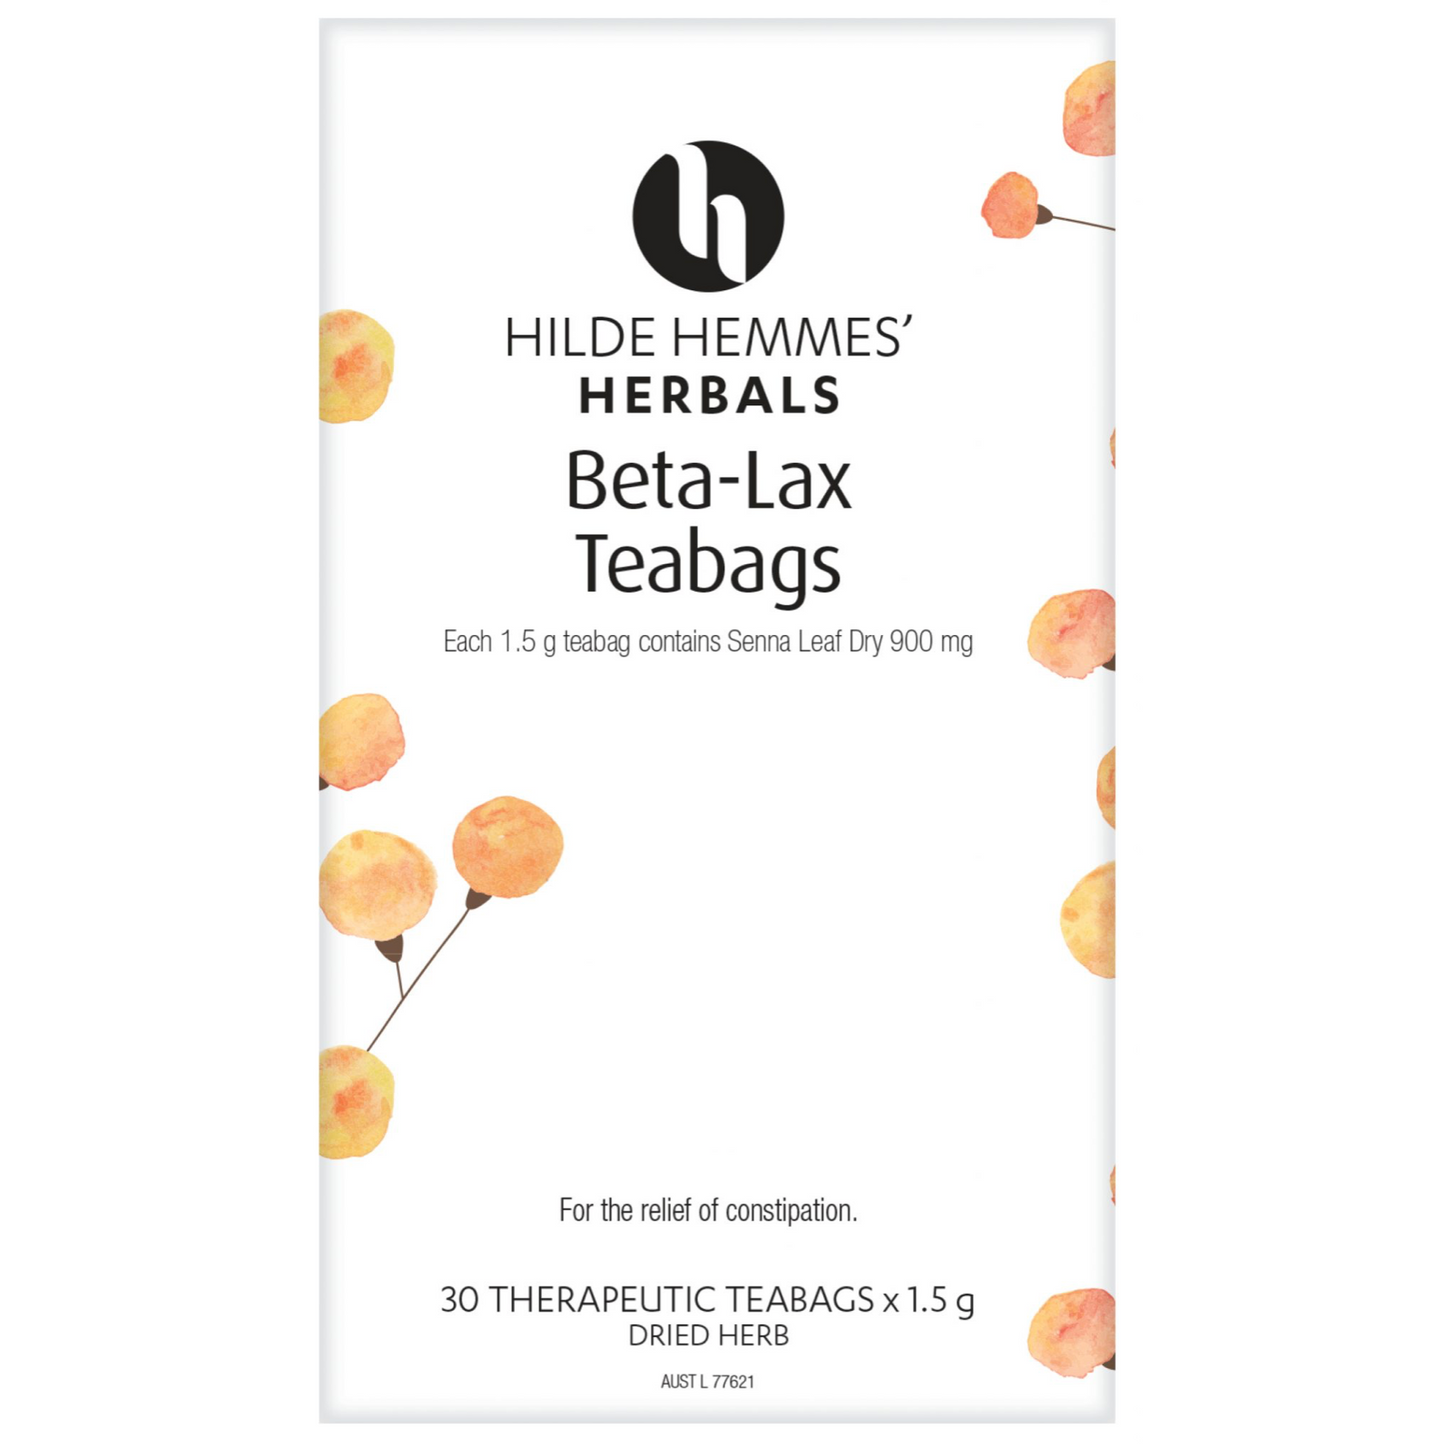 Hilde Hemmes' Herbals Beta-Lax Herbs, 30 Tea Bags